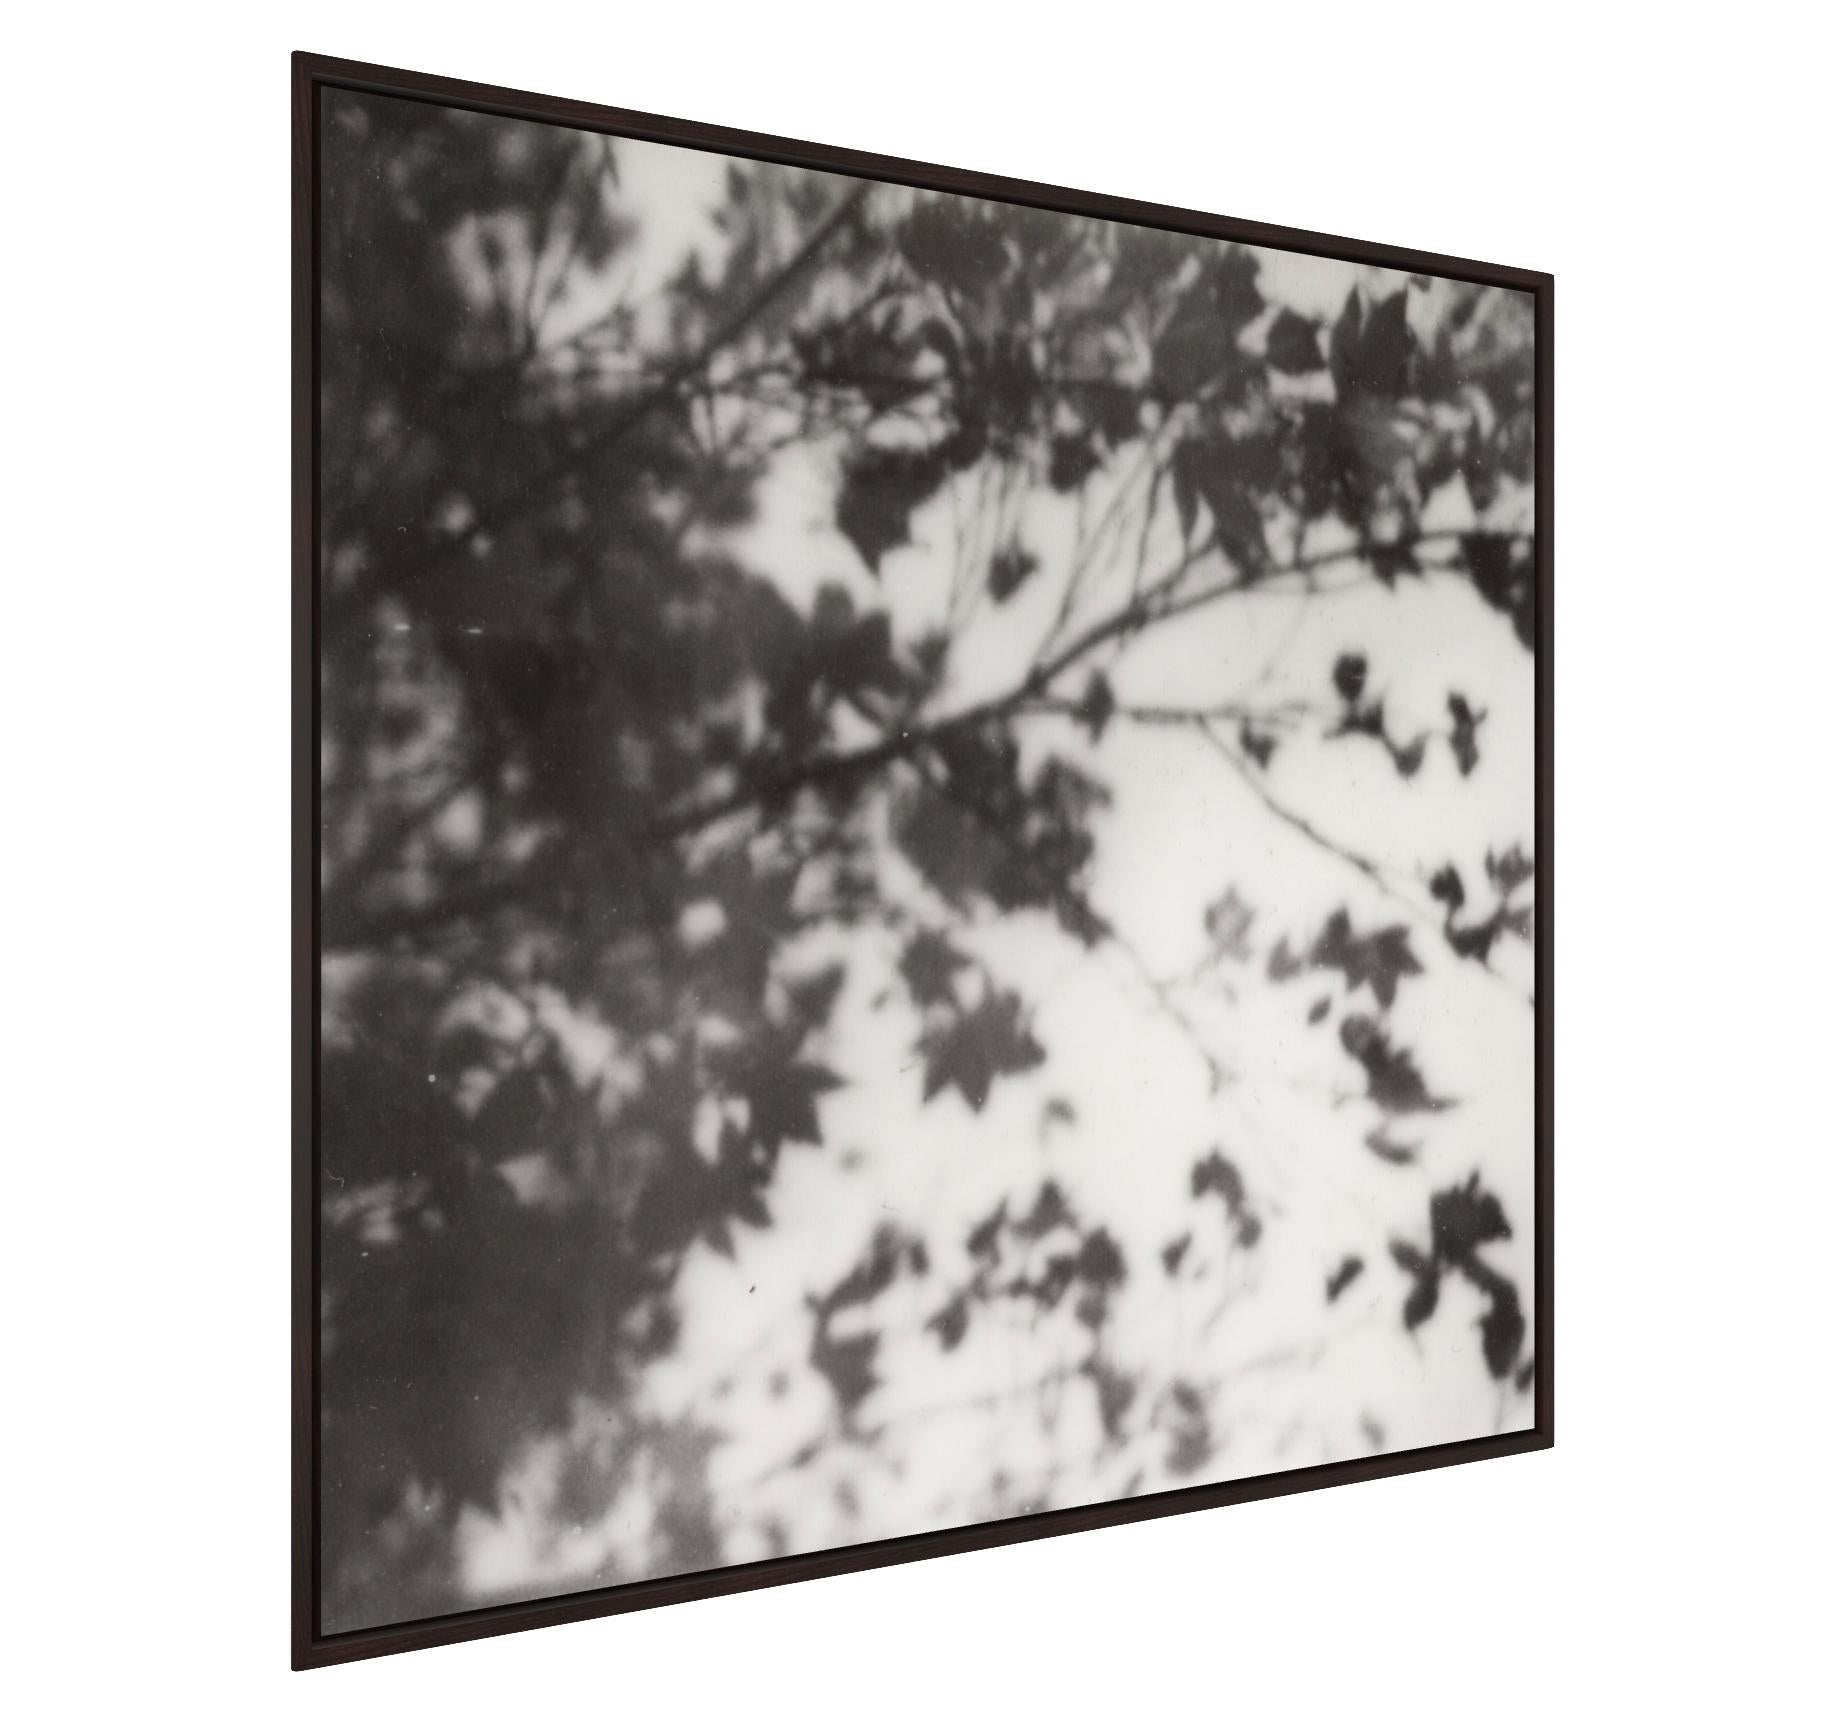 Trois rêves - Nature morte en noir et blanc Tirage photographique sur film encadré - Gris Abstract Photograph par Pia Clodi